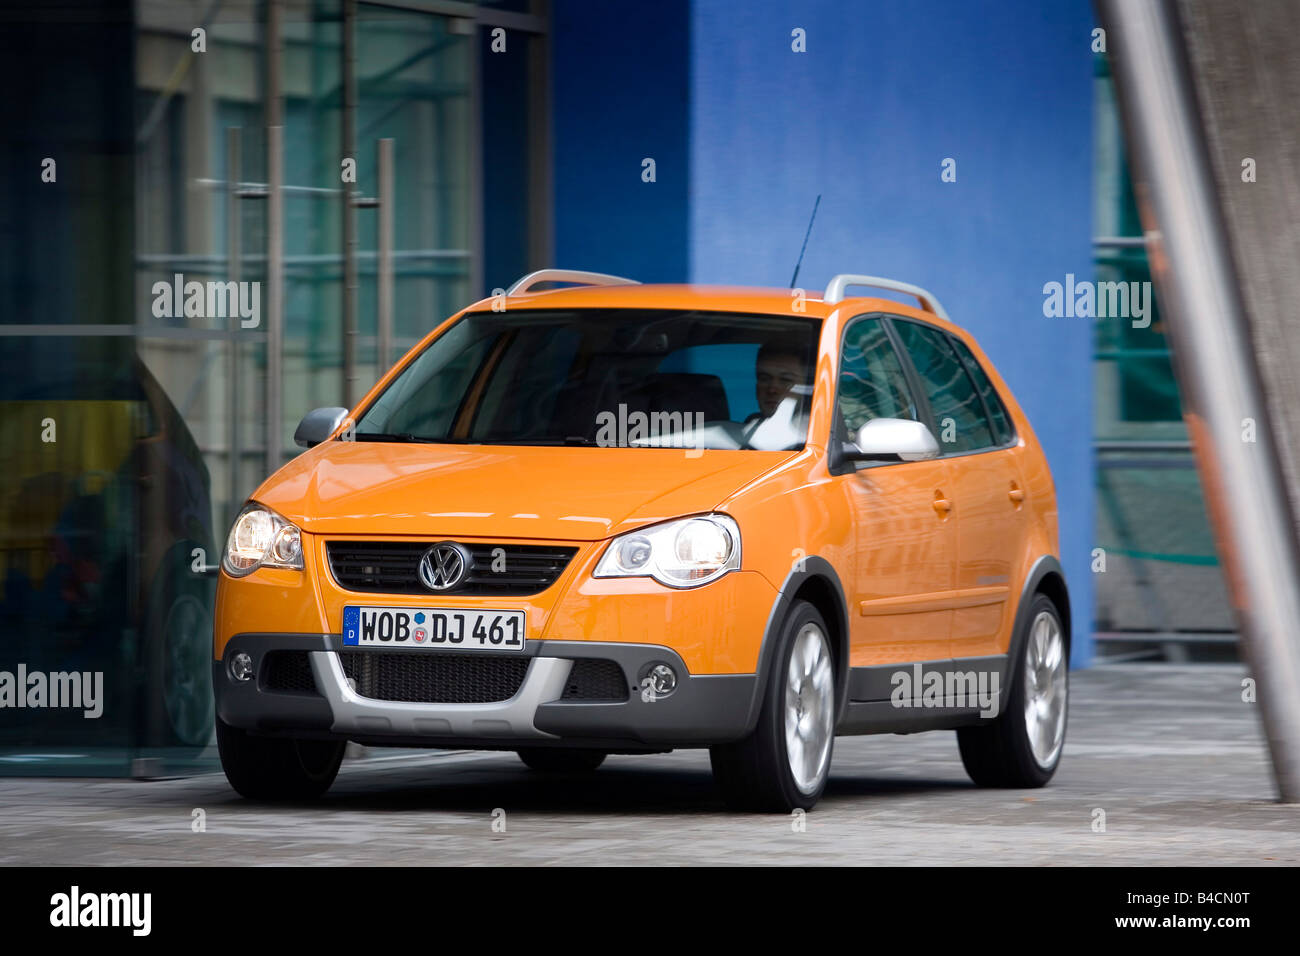 Volkswagen VW Polo Cross 1.4 TDI, modèle 2006-, orange , conduite, la diagonale de l'avant, vue frontale, Ville Banque D'Images